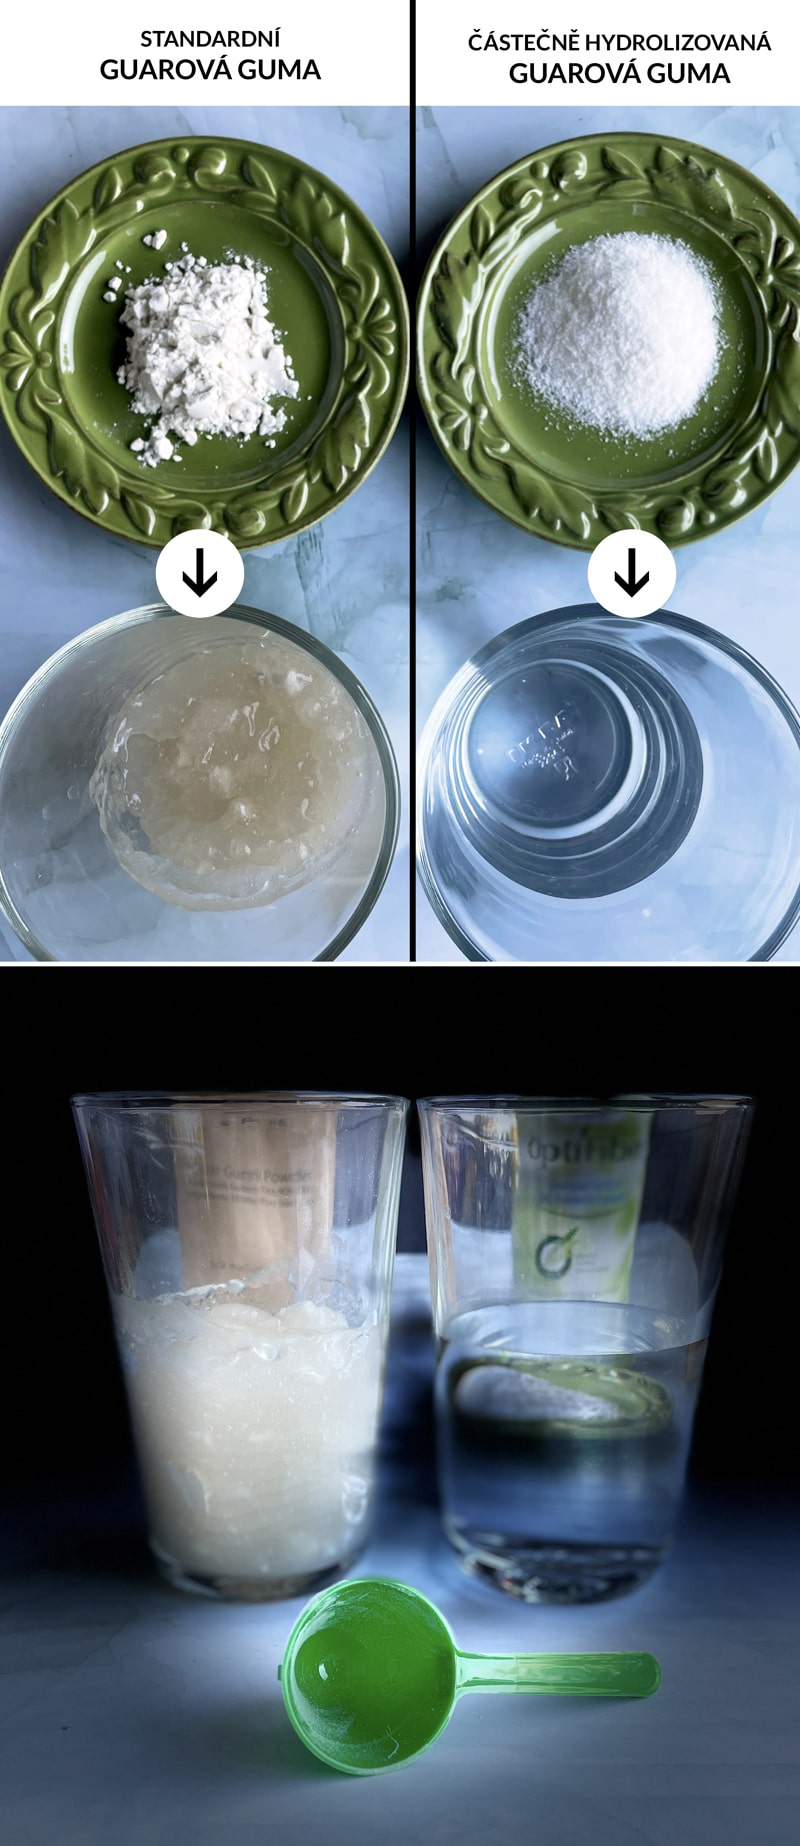 Rozdiel medzi guarovou gumou a čiastočne hydrolyzovanou guarovou gumou